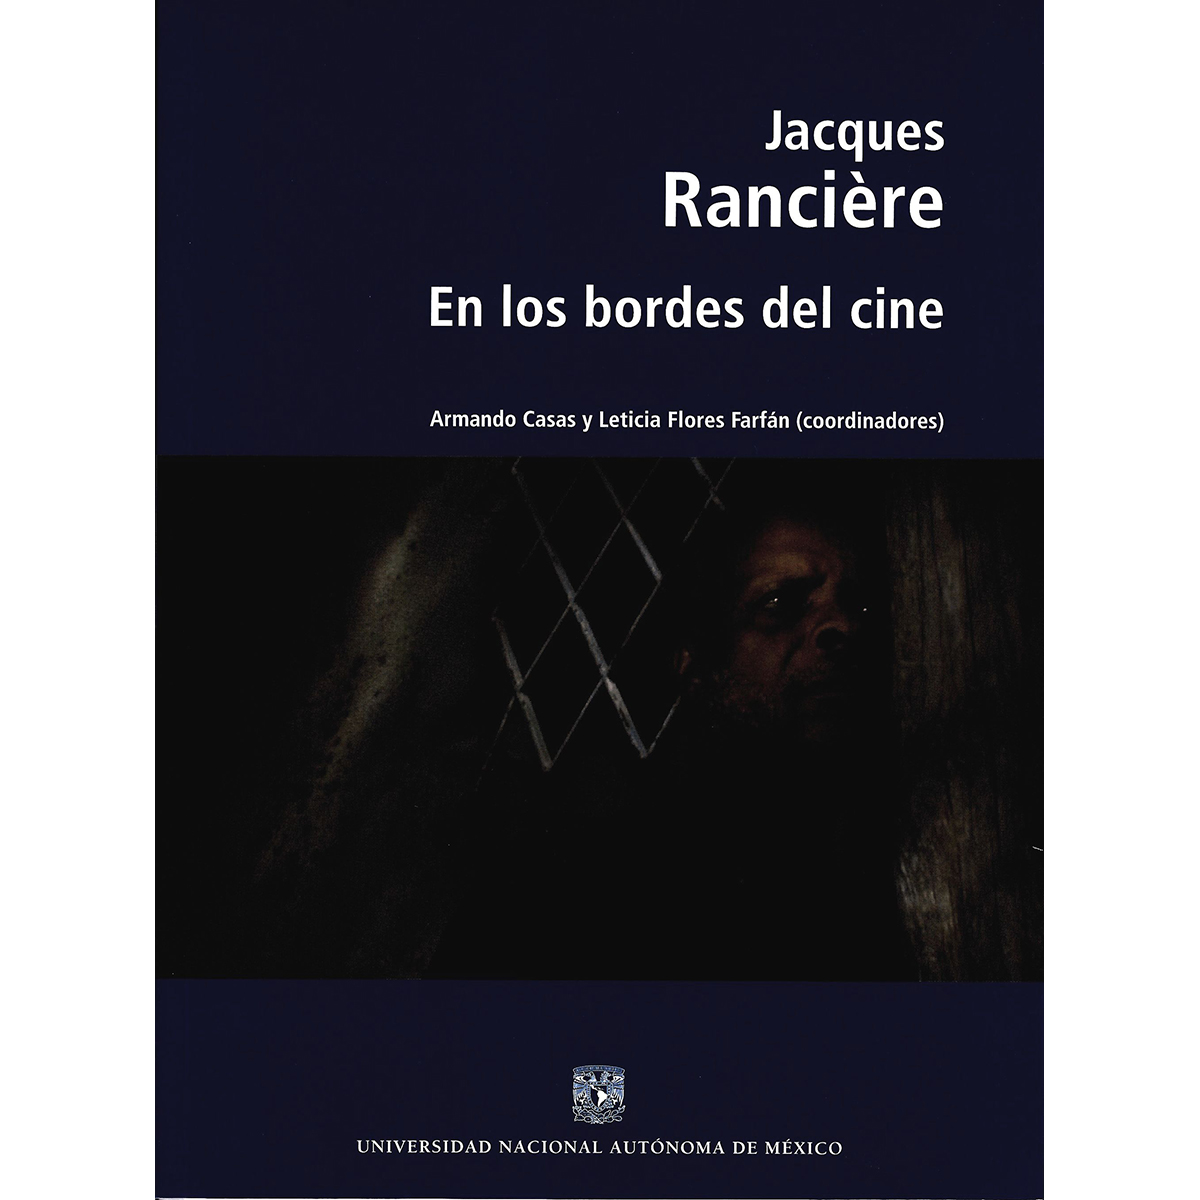 JACQUES RANCIÈRE. EN LOS BORDES DEL CINE